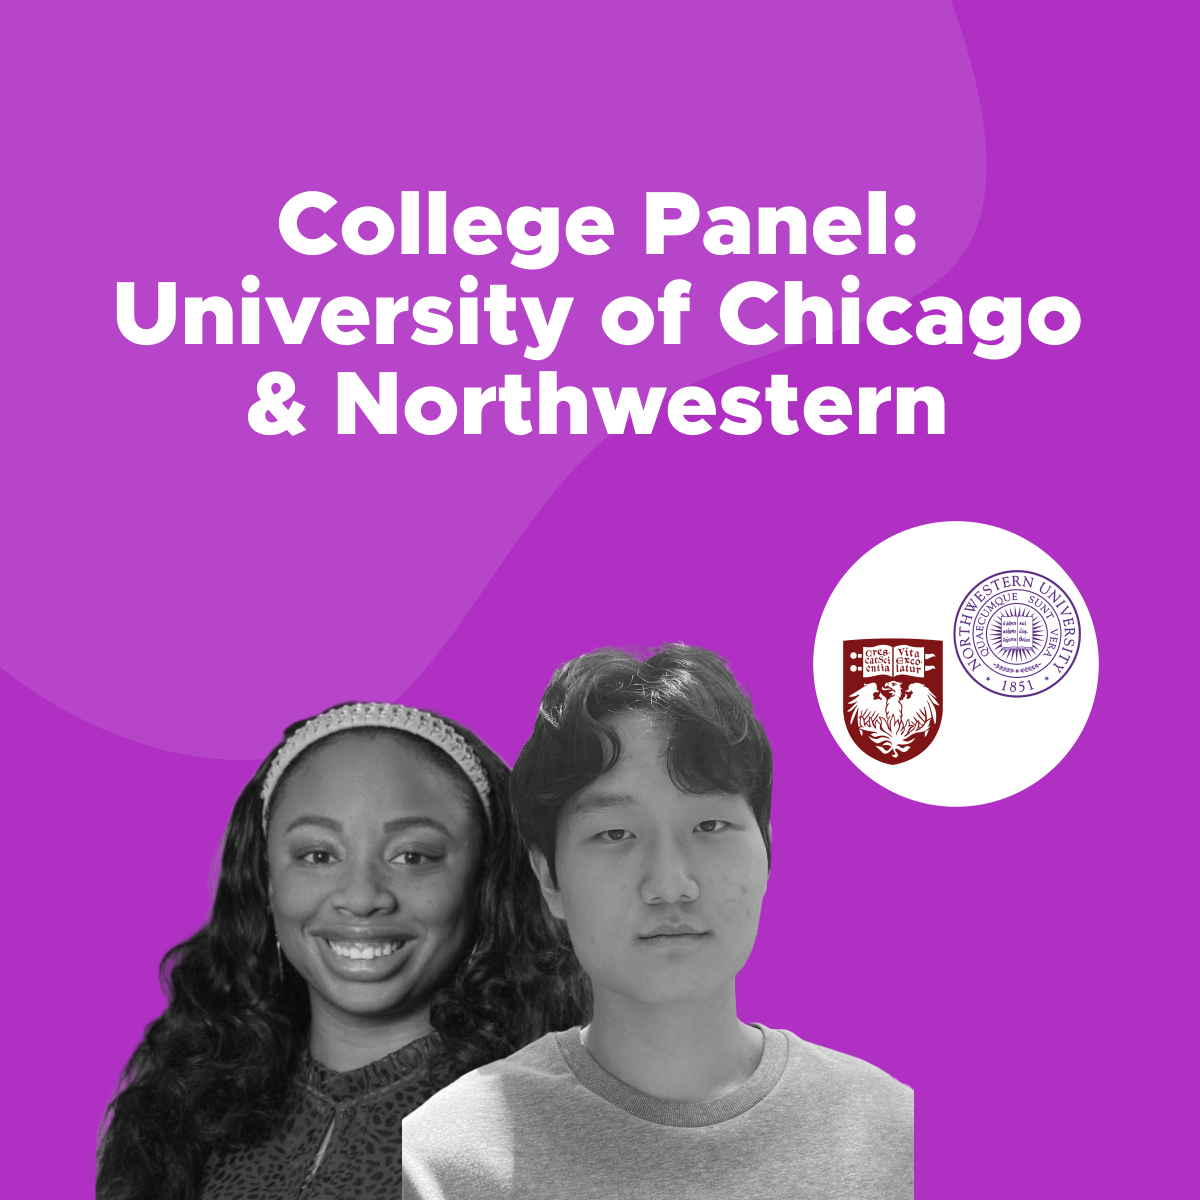 northwestern-university-and-university-of-chicago-panel